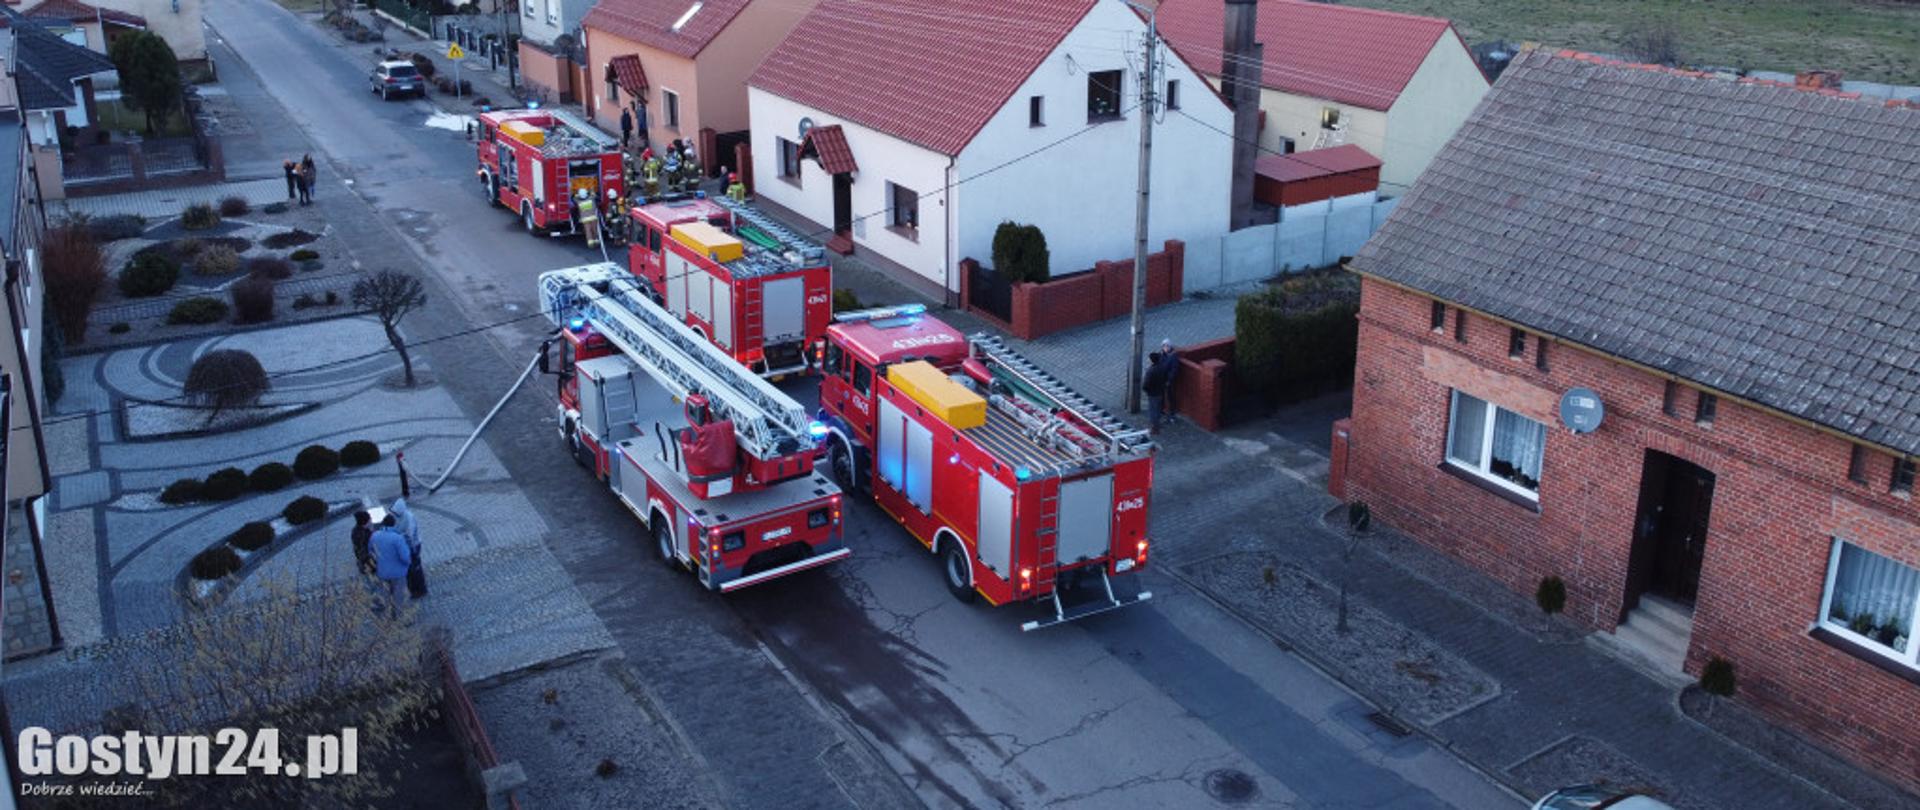 Zdjęcie przedstawia samochody pożarnicze stojące przy budynkach.